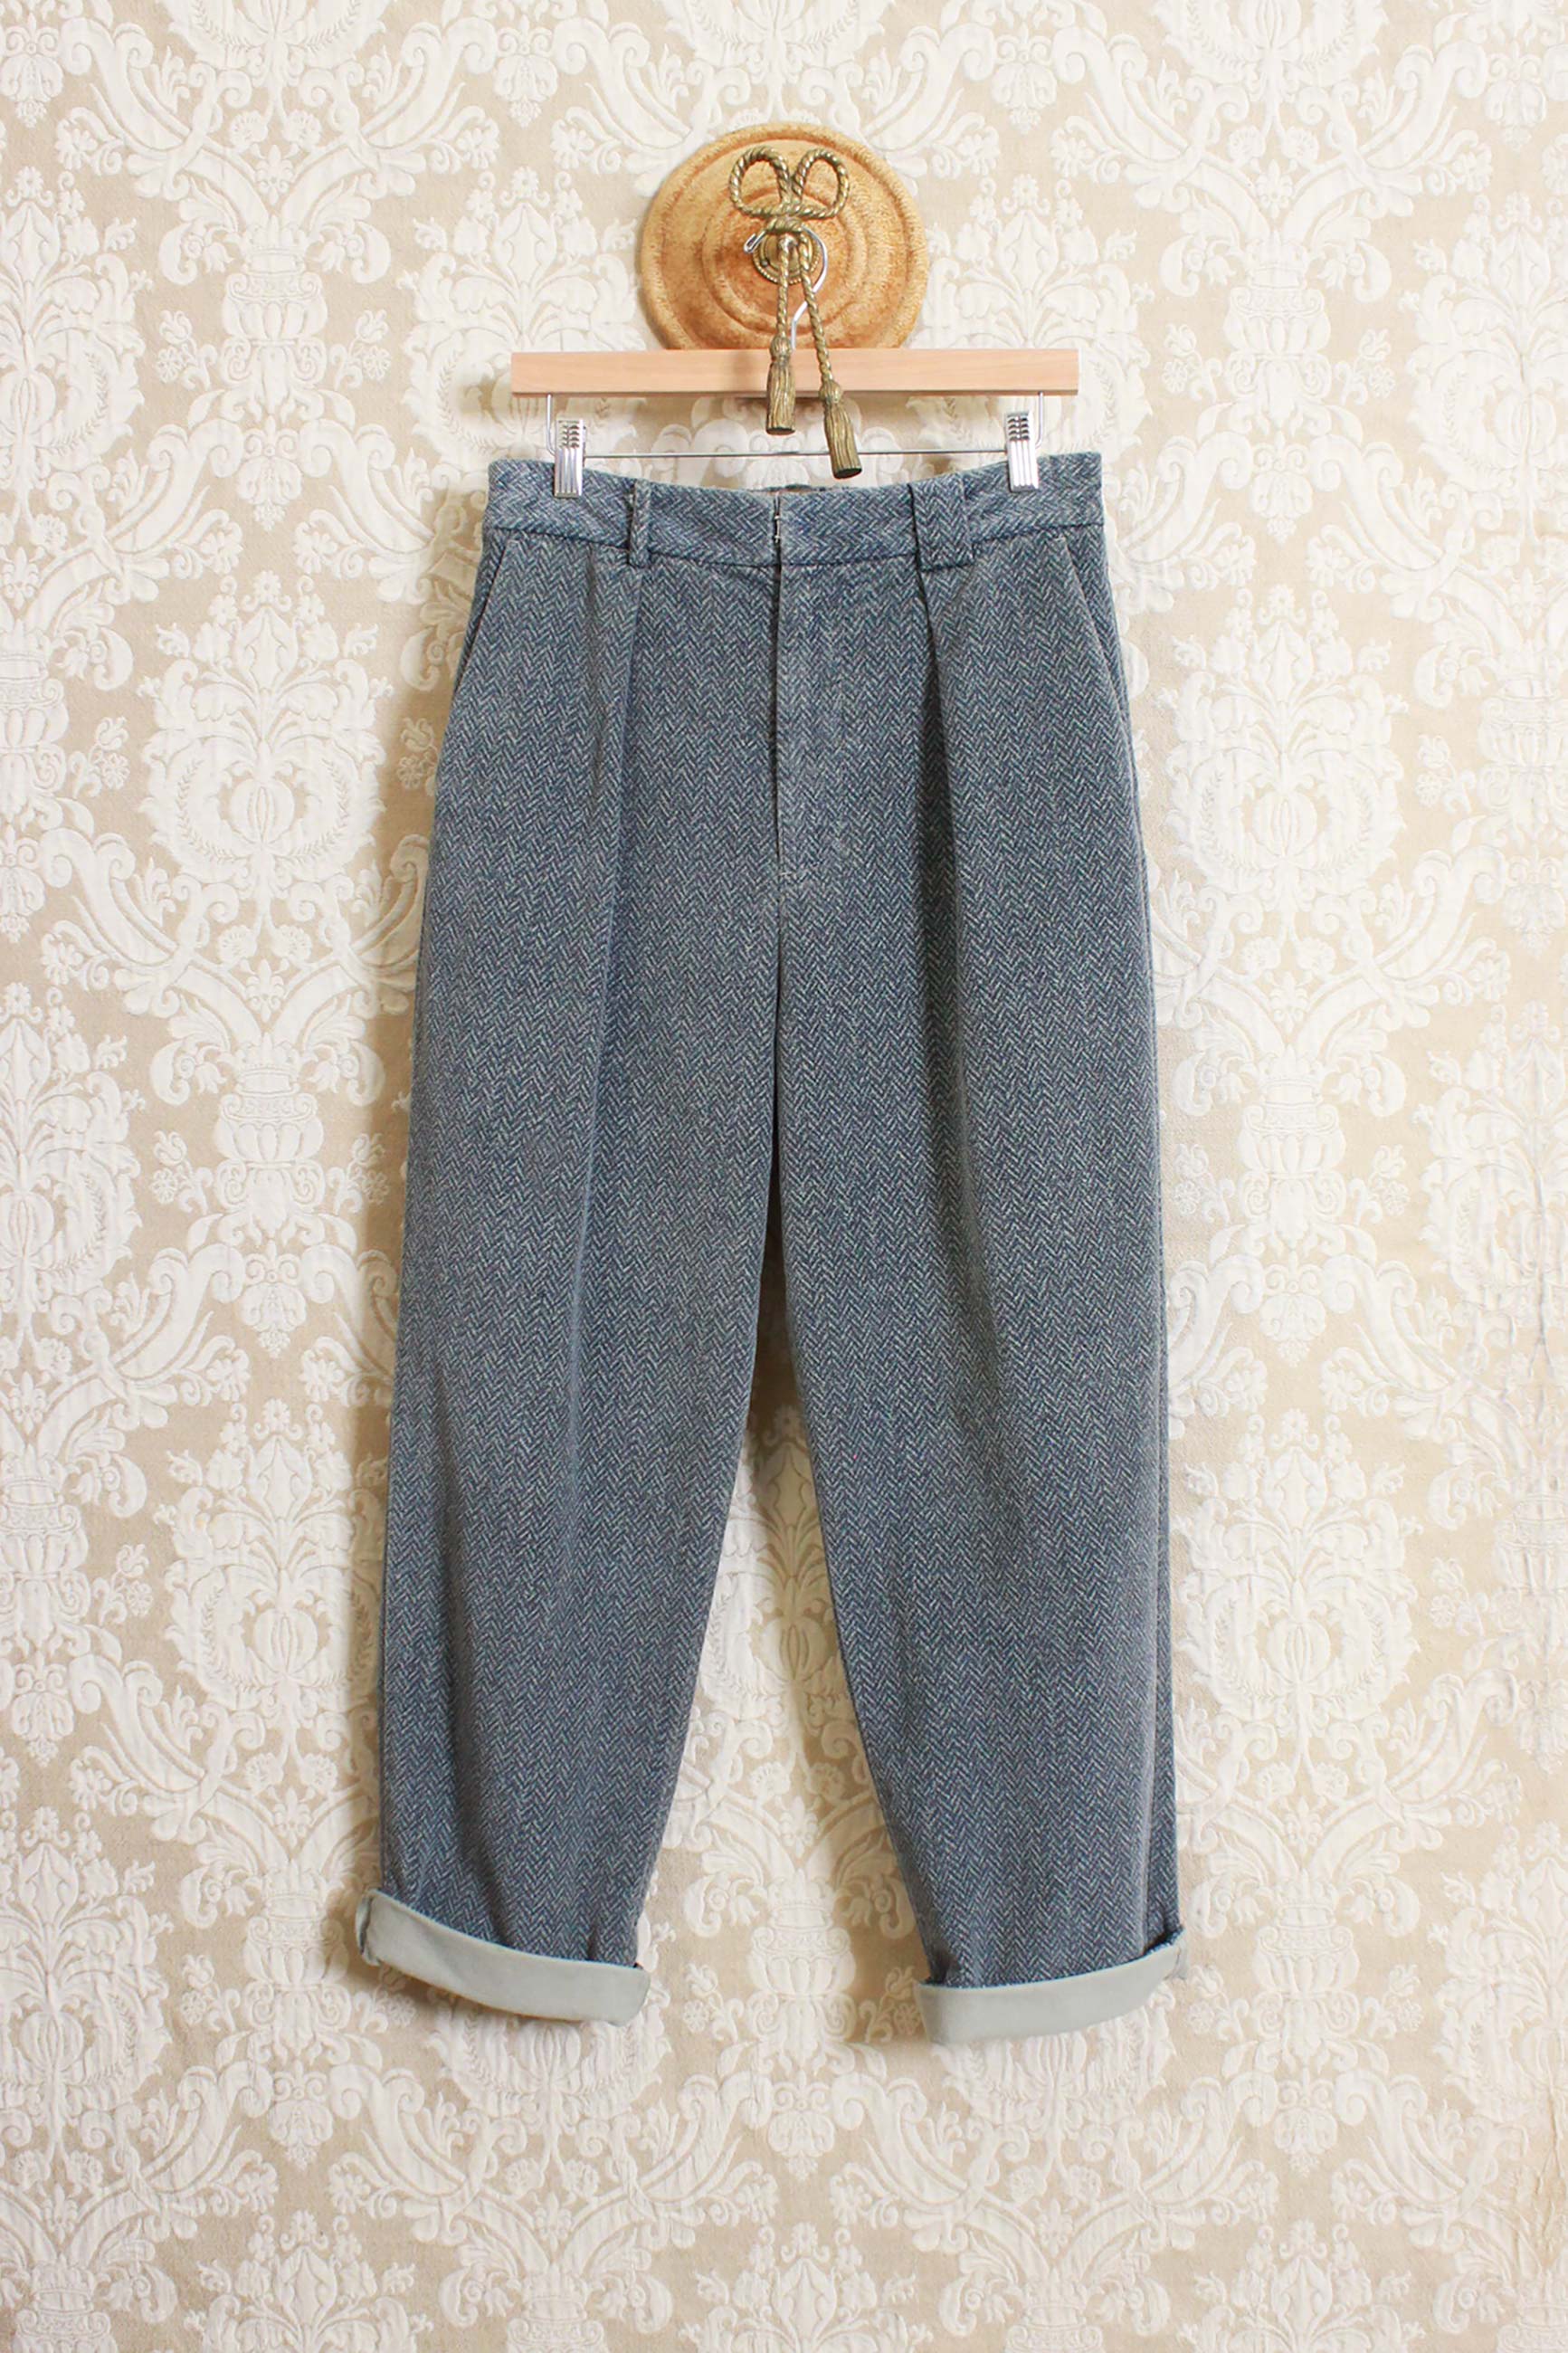 Pantalone Original Vintage Style in velluto herringbone color stone collezione uomo fw23